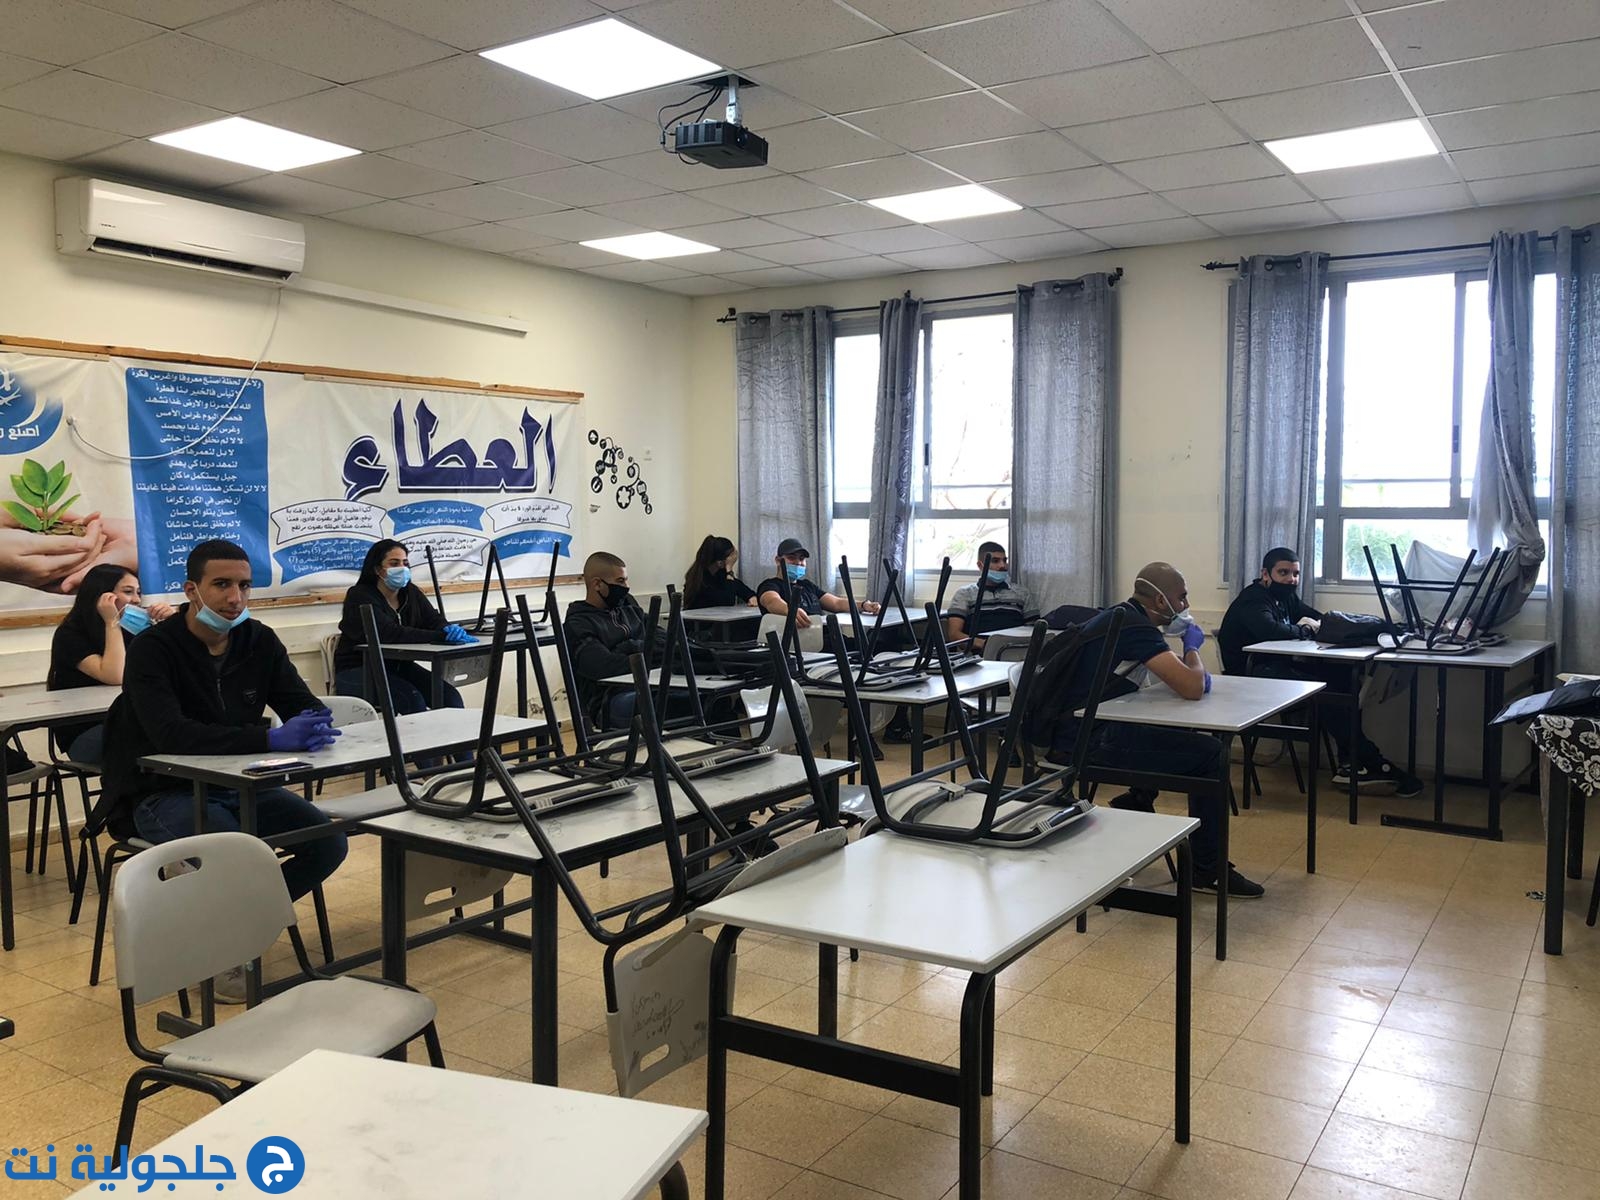 دار التربية والعلوم تفتح ابوابها لاستقبال طلابها